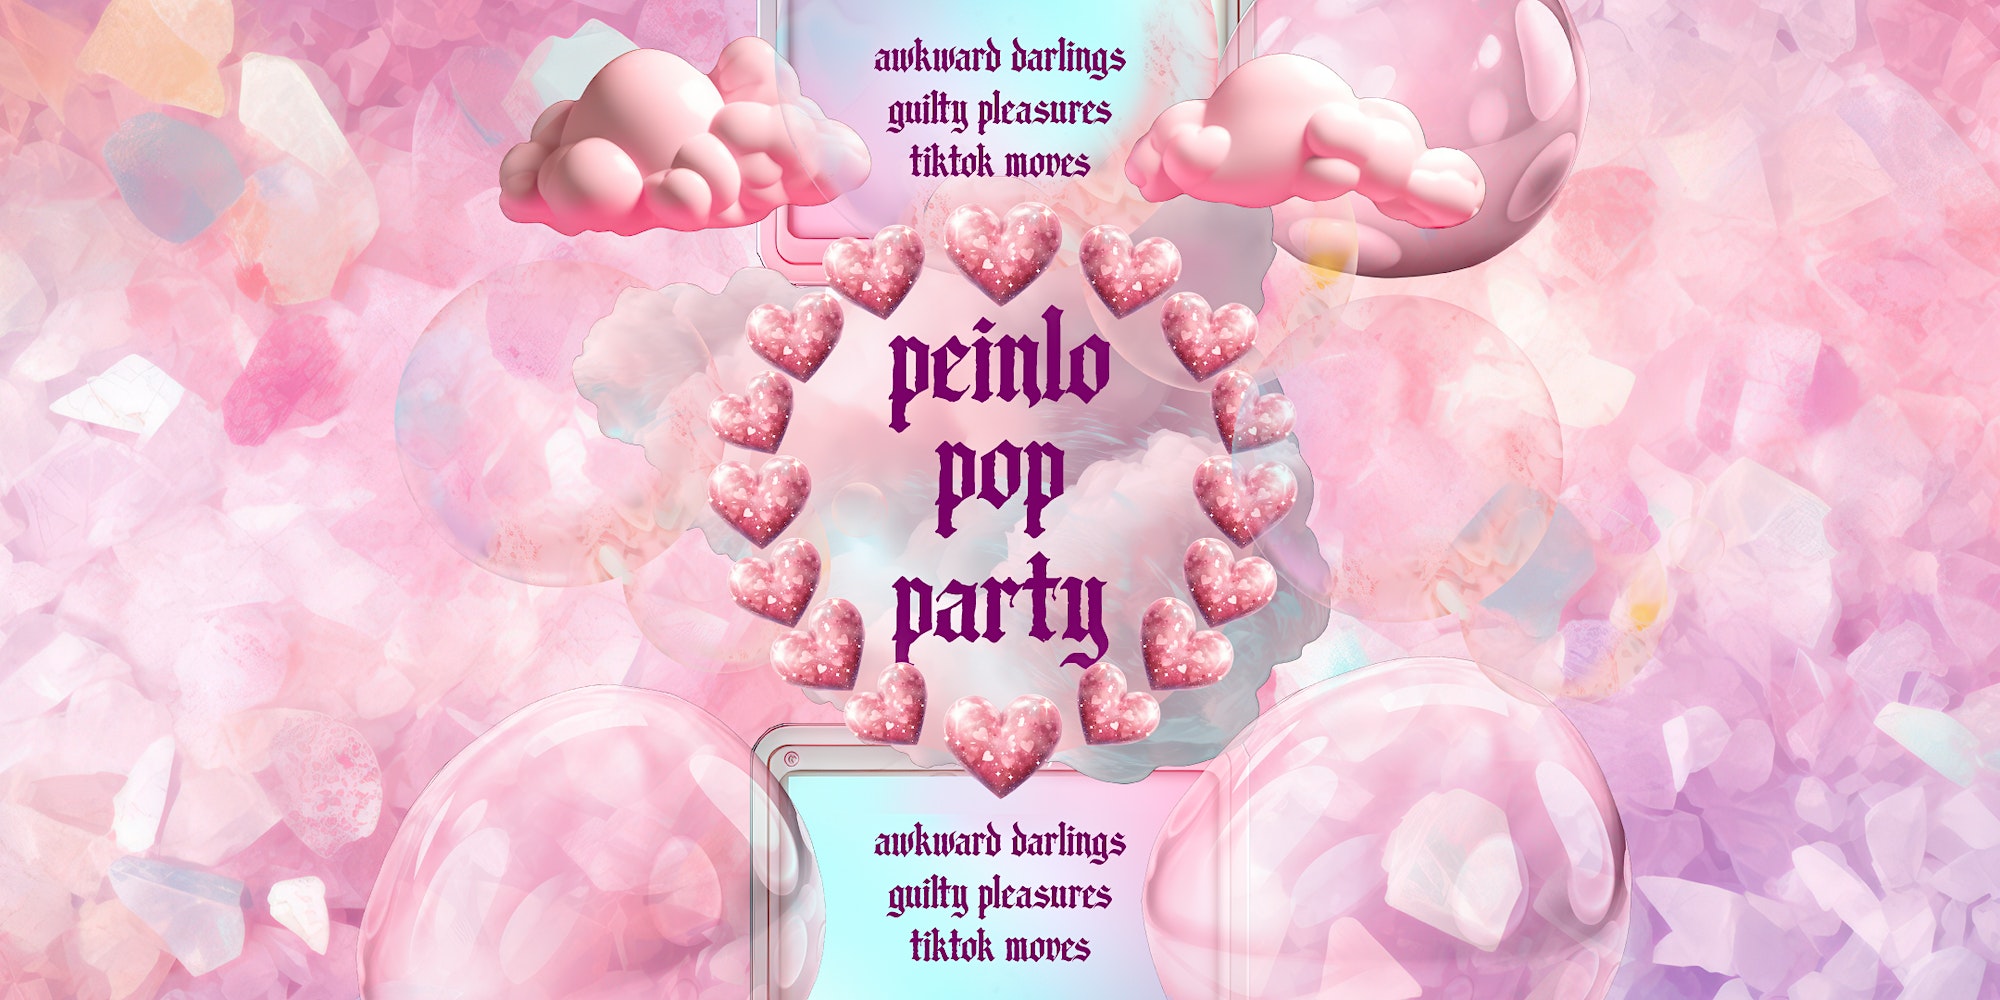 PEINLO Pop Party